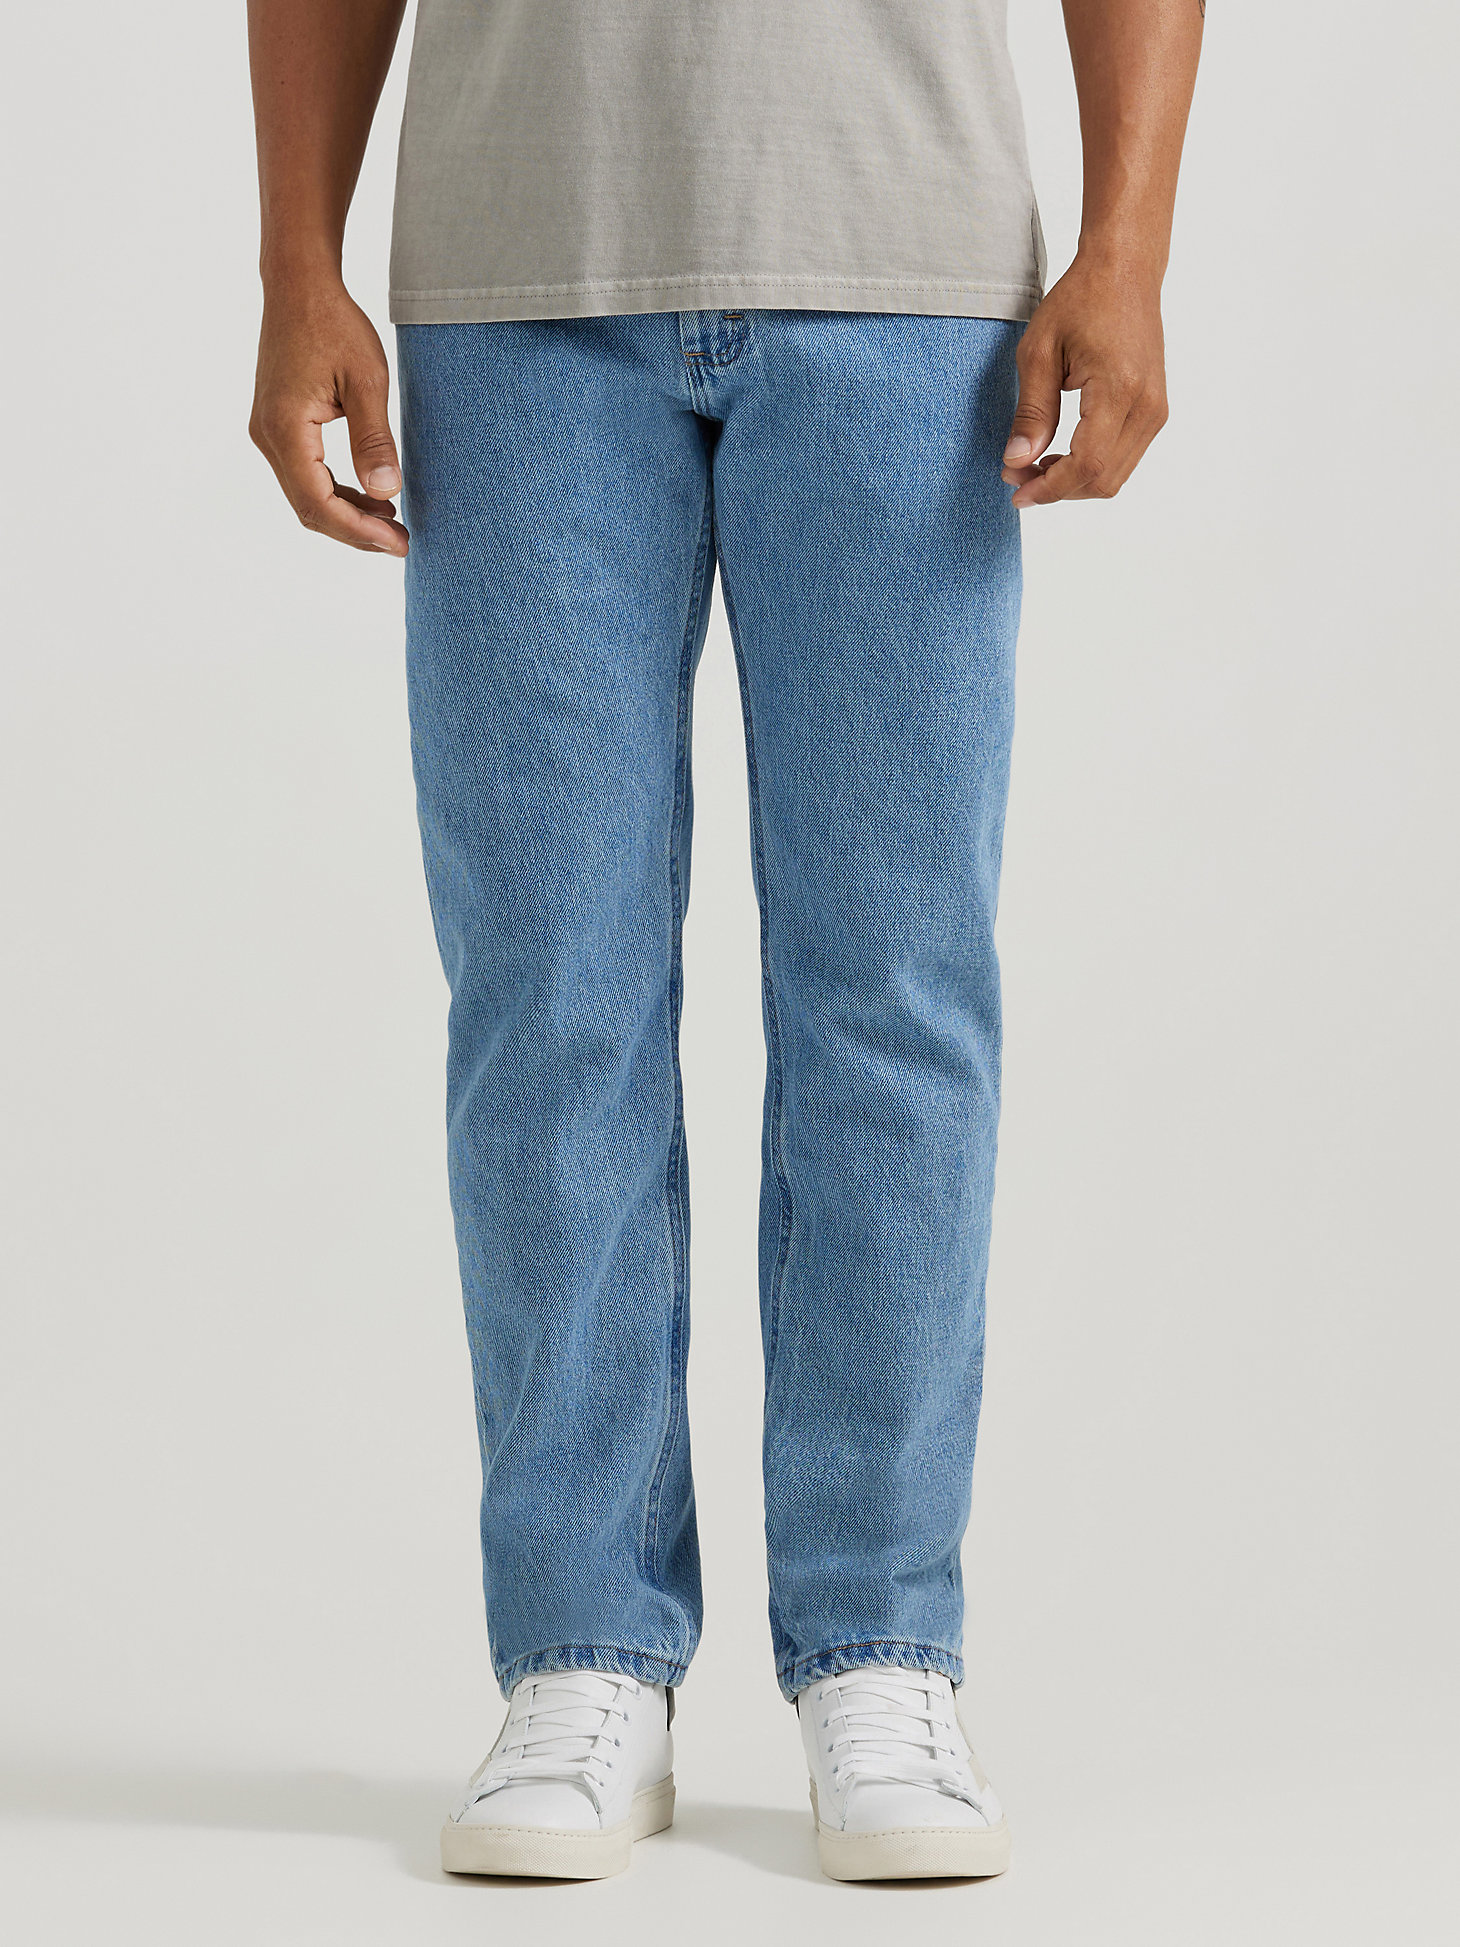 Wrangler Mens Regular Fit Jeans 